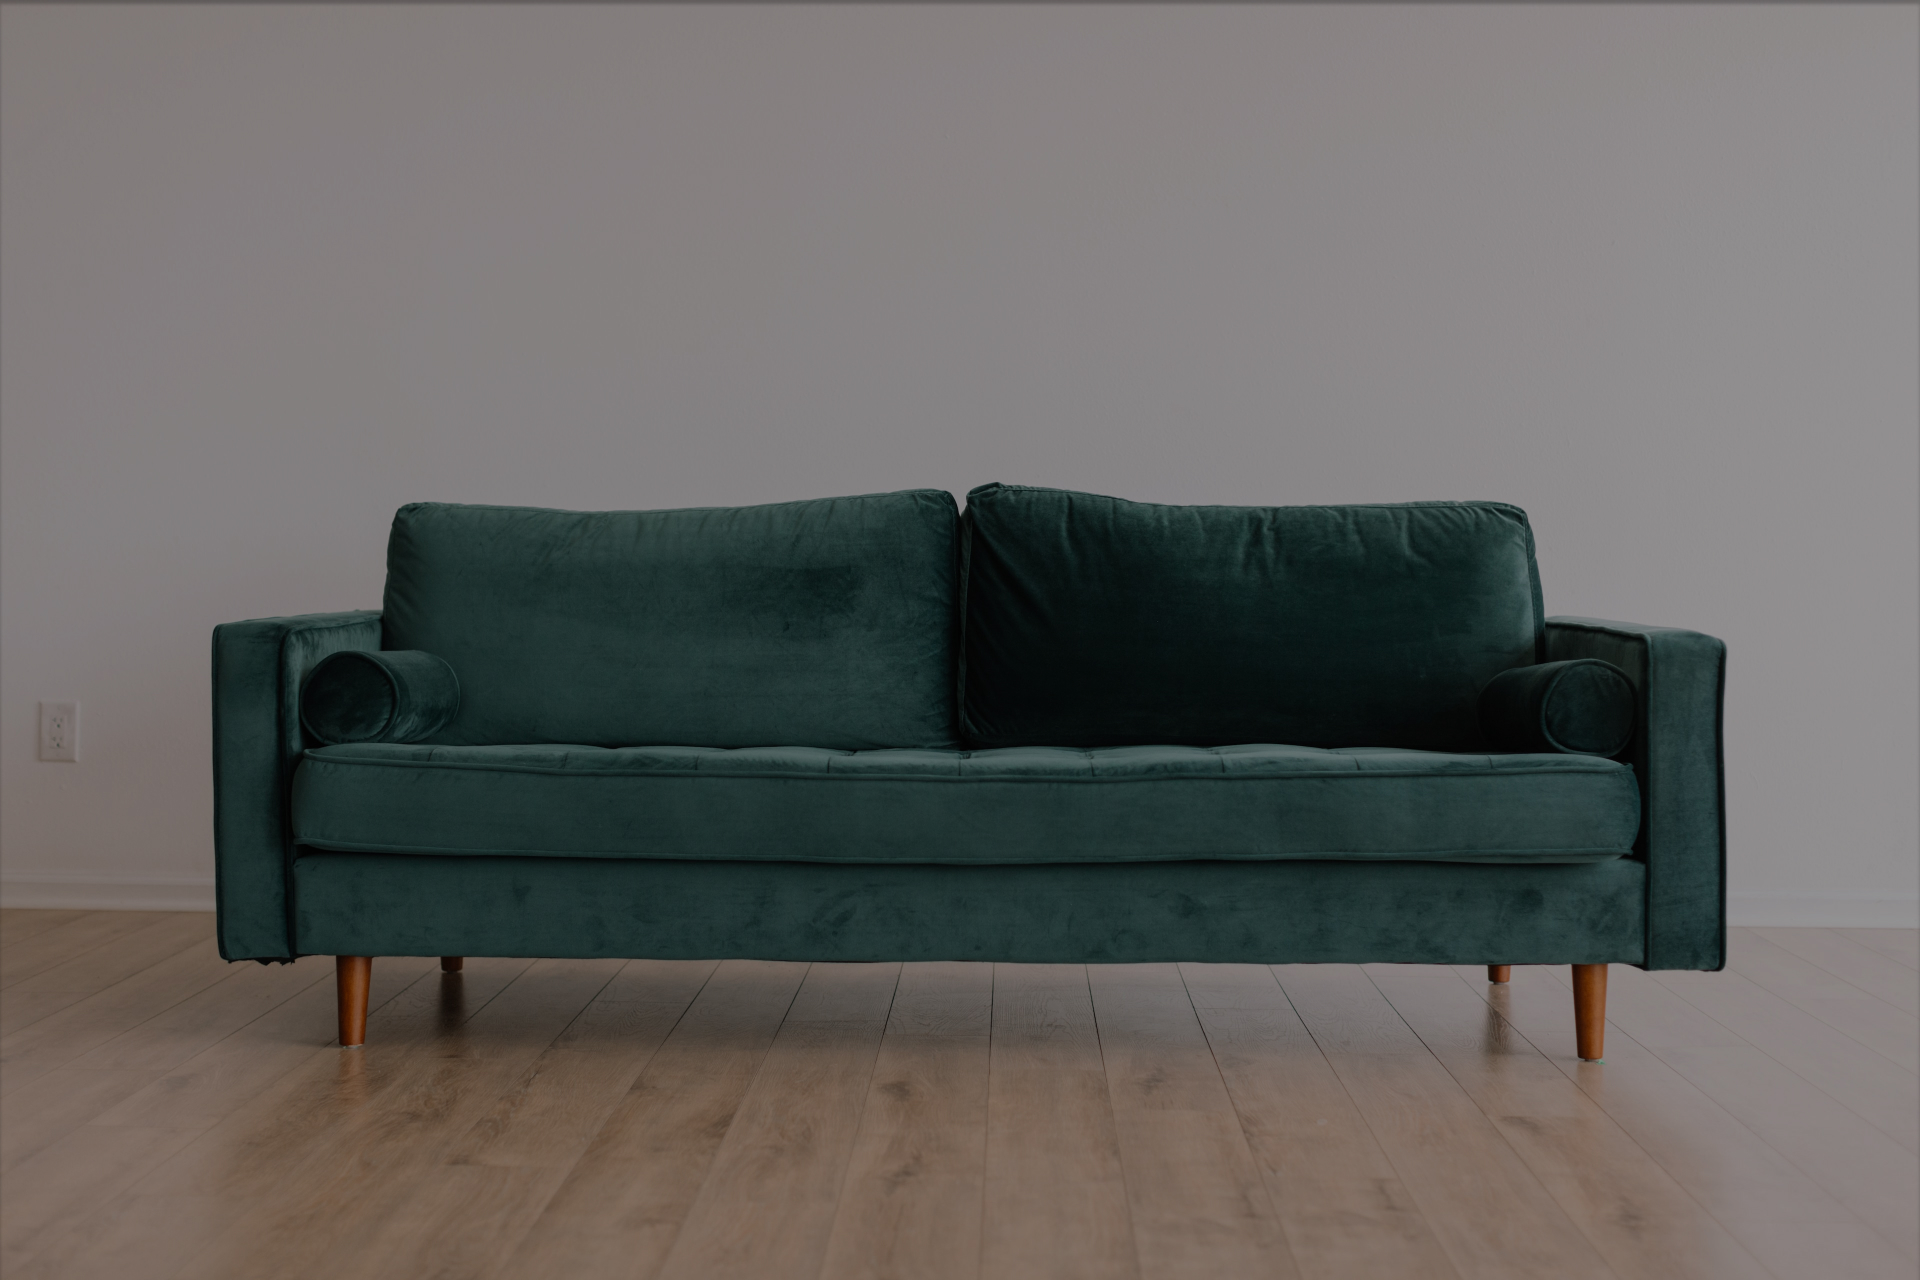 Un sofá forma parte de la categoría de residuos voluminosos